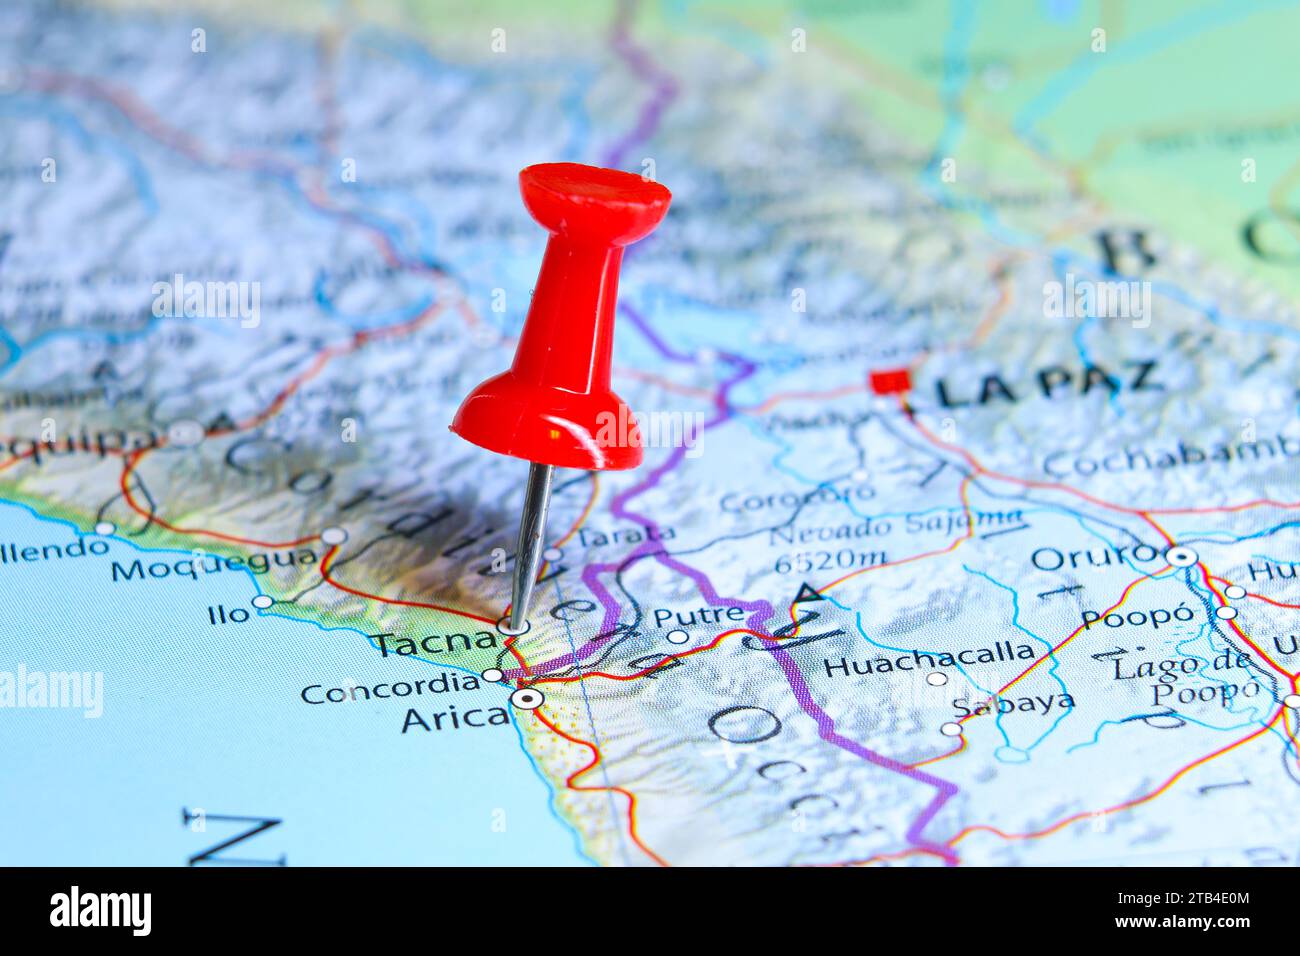 Tacna, Peru pin on map Stock Photo